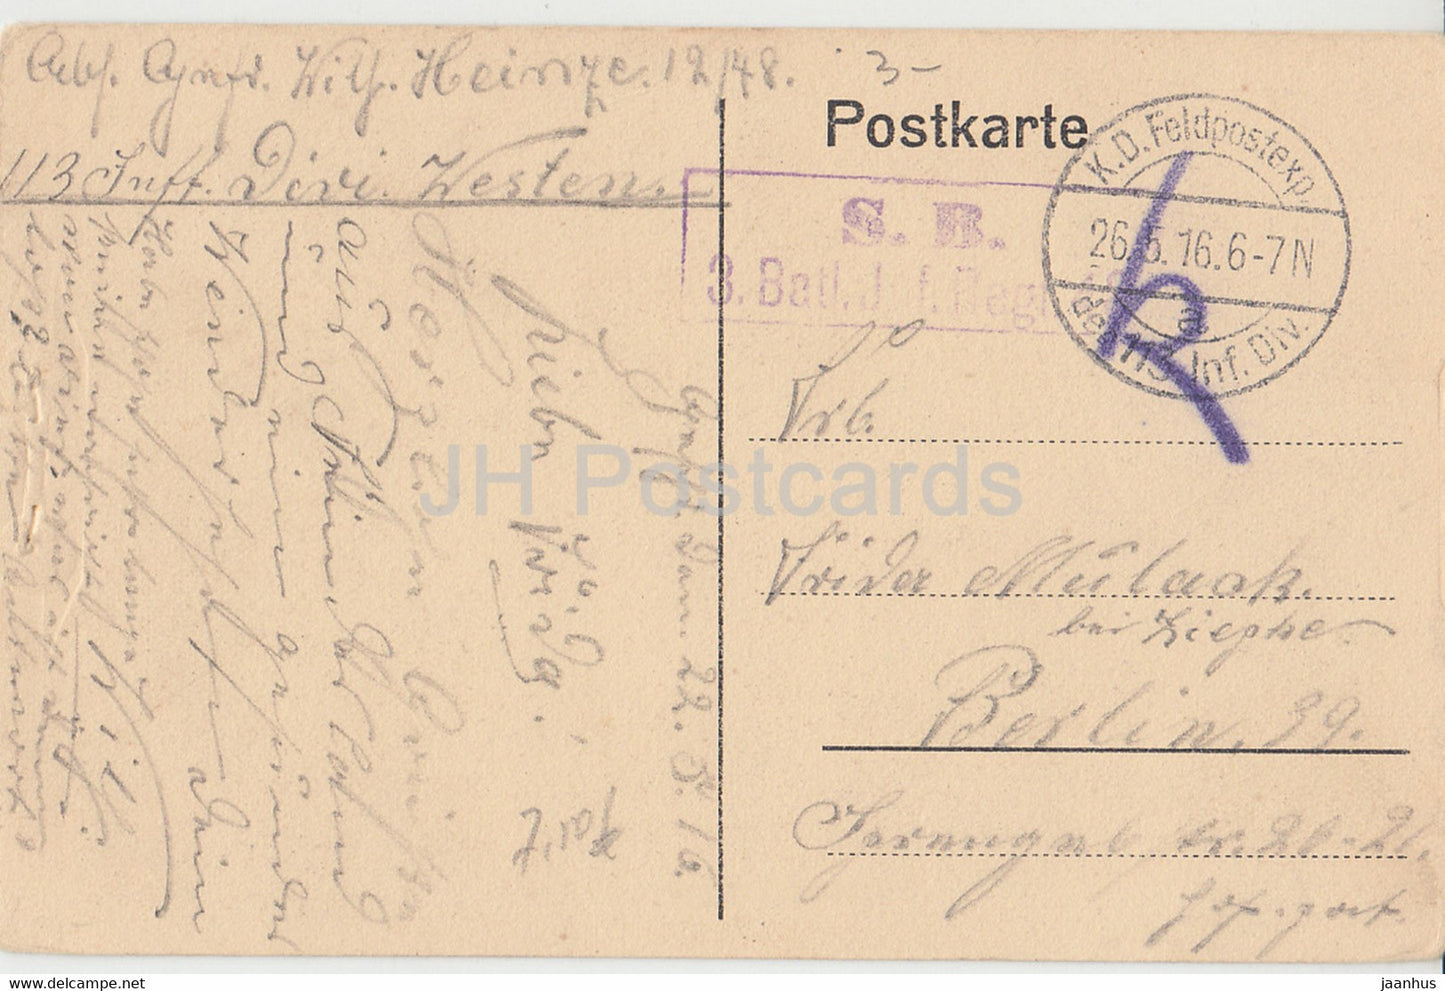 Couchy le Chateau - Zimmer von Gabriele d'Estrees - château - Feldpost - carte postale ancienne - 1916 - France - utilisé